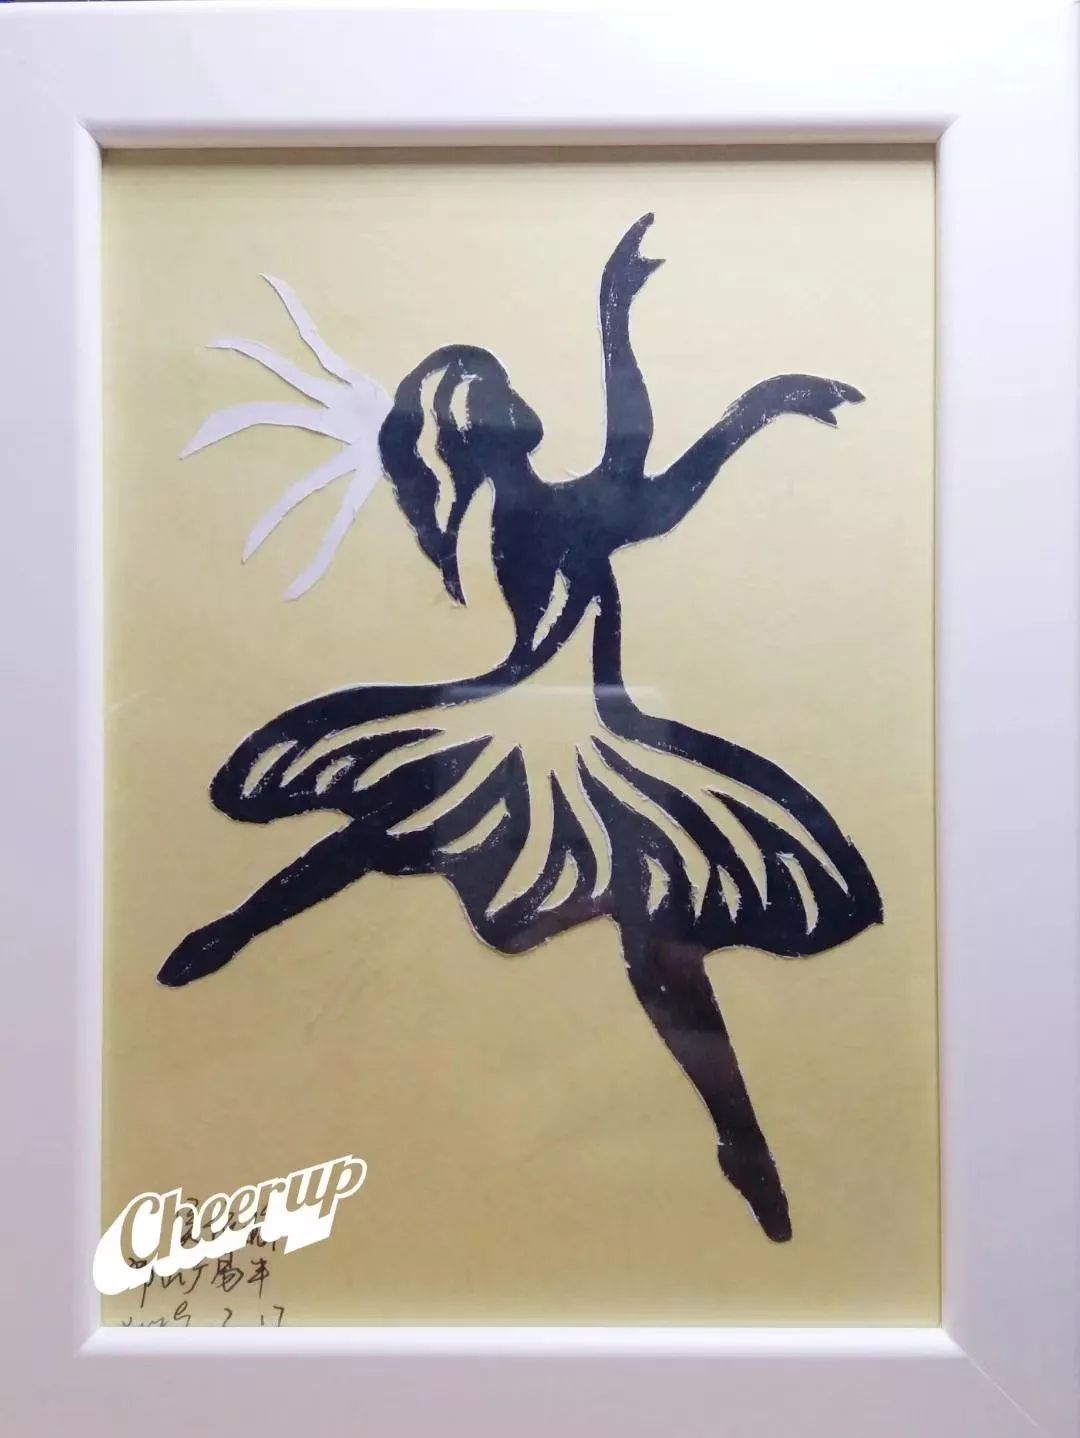 来自蒙古国的智龙同学第一个完成了剪纸,他的图案是芭蕾舞演员,贴上